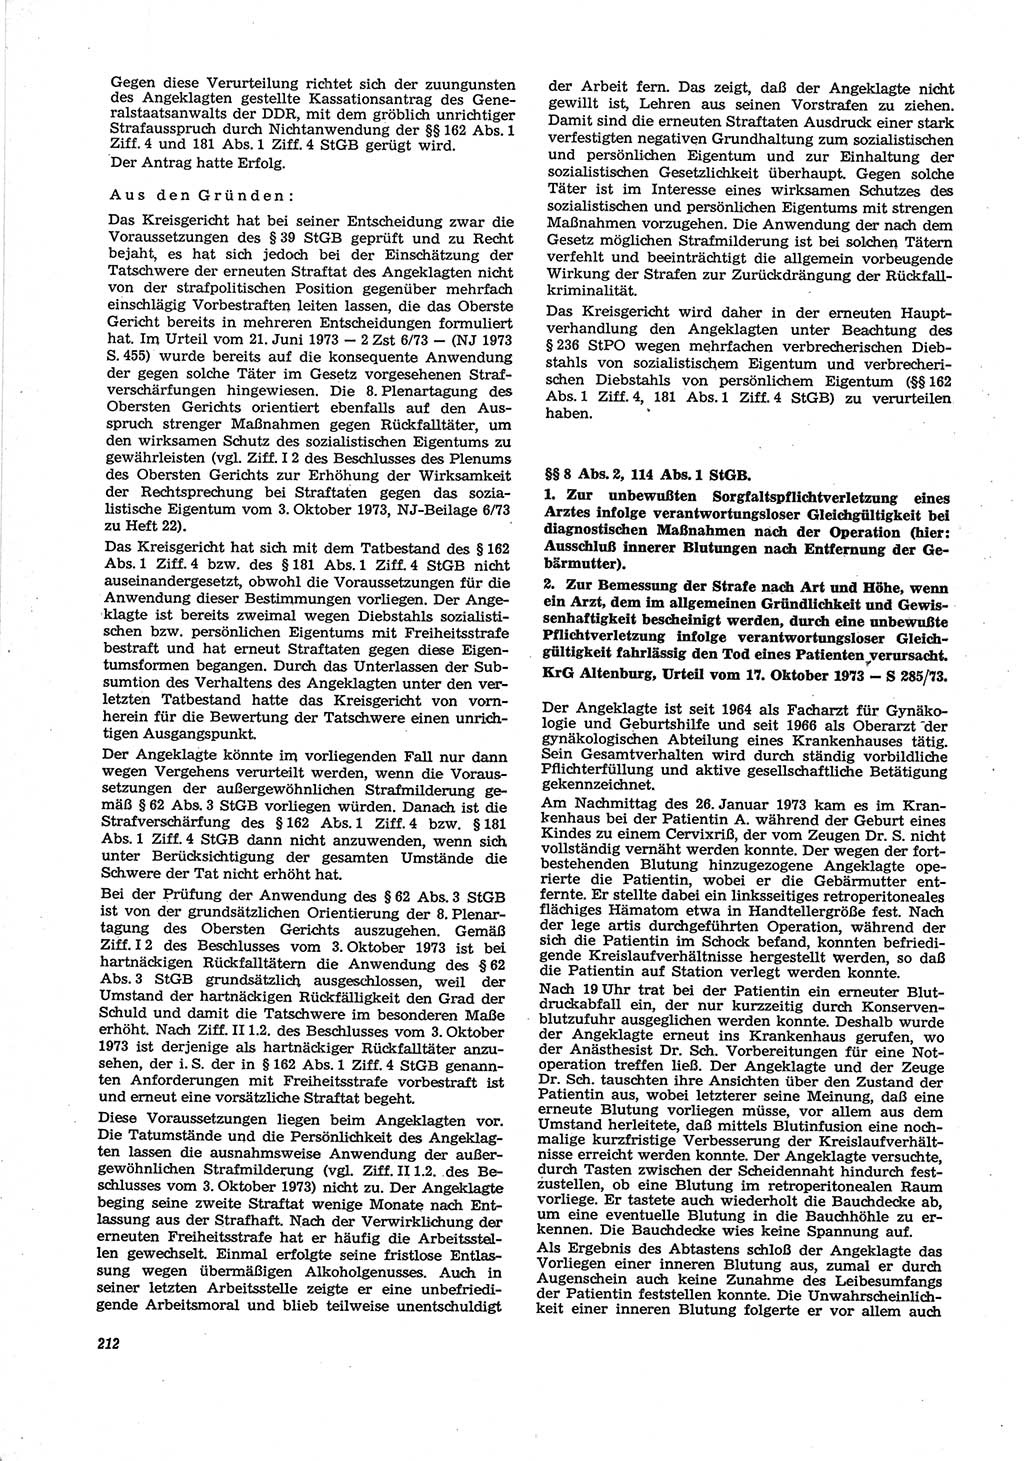 Neue Justiz (NJ), Zeitschrift für Recht und Rechtswissenschaft [Deutsche Demokratische Republik (DDR)], 28. Jahrgang 1974, Seite 212 (NJ DDR 1974, S. 212)